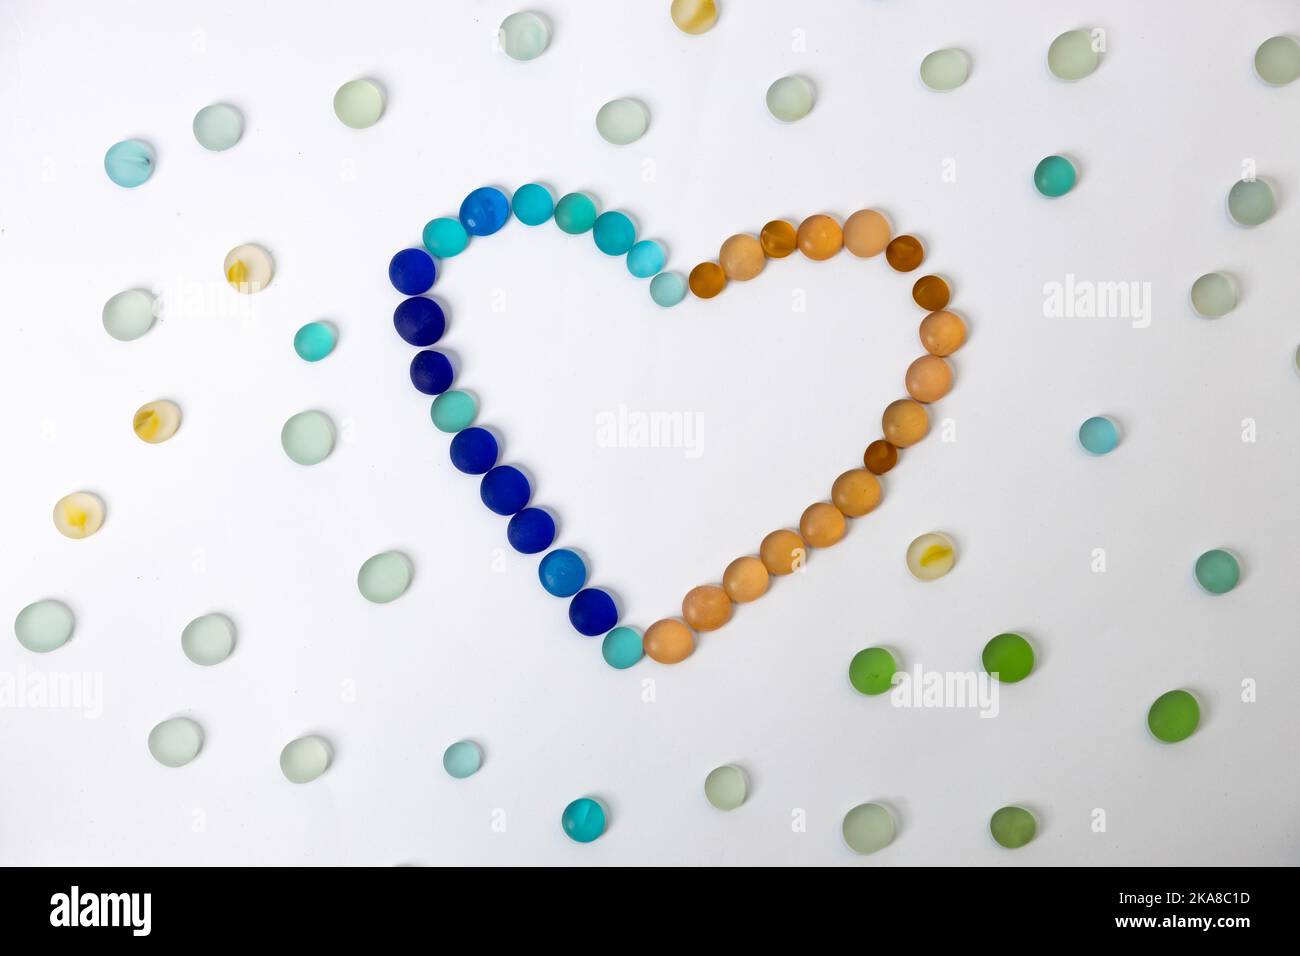 Pierres de verre polies rondes colorées en forme de coeur avec pierres de verre étaler autour sur un arrière-plan isolé. Photo de haute qualité Banque D'Images